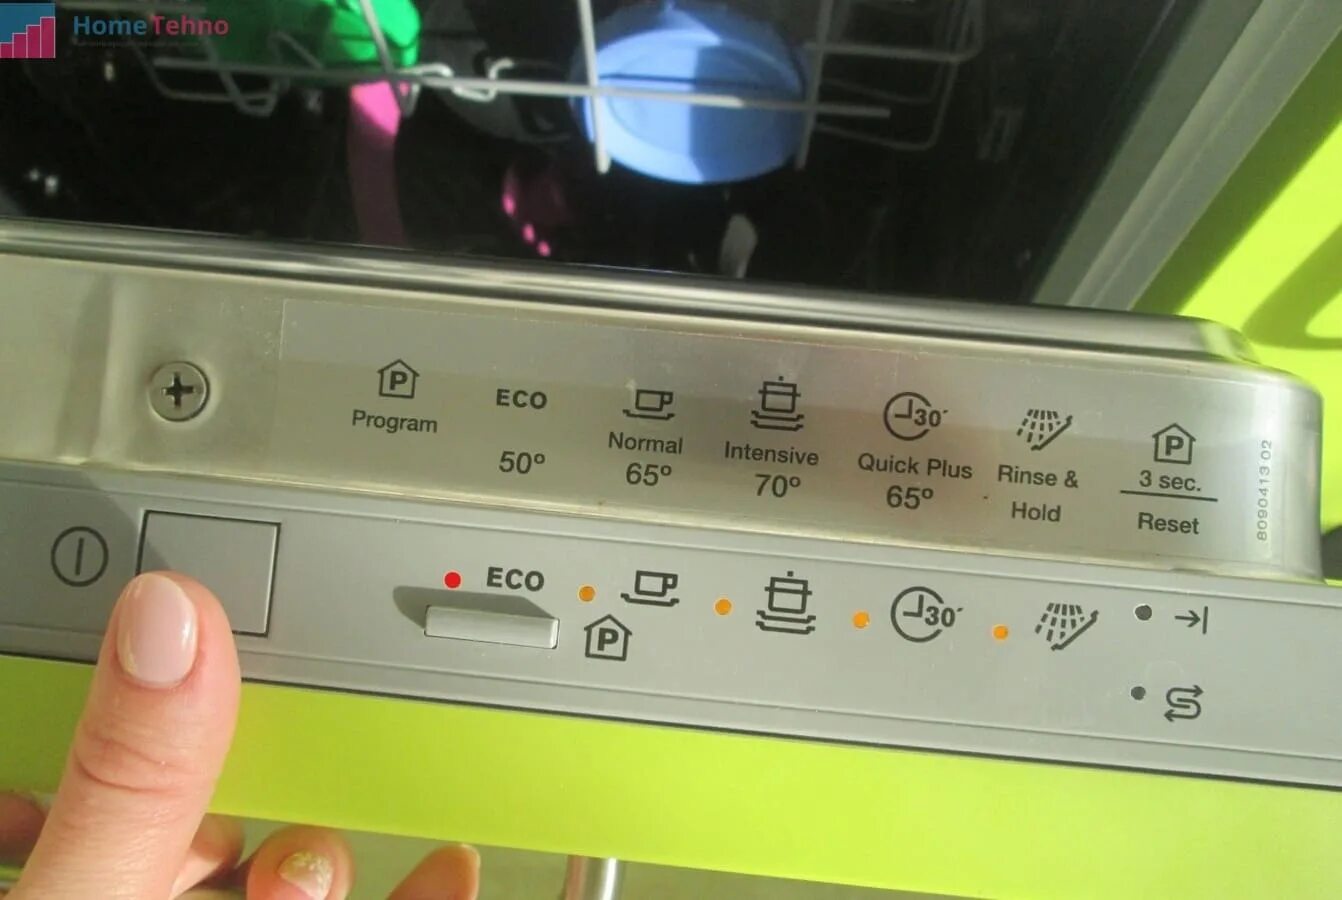 Посудомойка Bosch значки индикаторы. Посудомоечная машина Электролюкс 45 панель управления. Посудомойка Bosch индикатор фильтр. Индикаторы Электролюкс посудомоечной машины Электролюкс. Снежинка на посудомойке